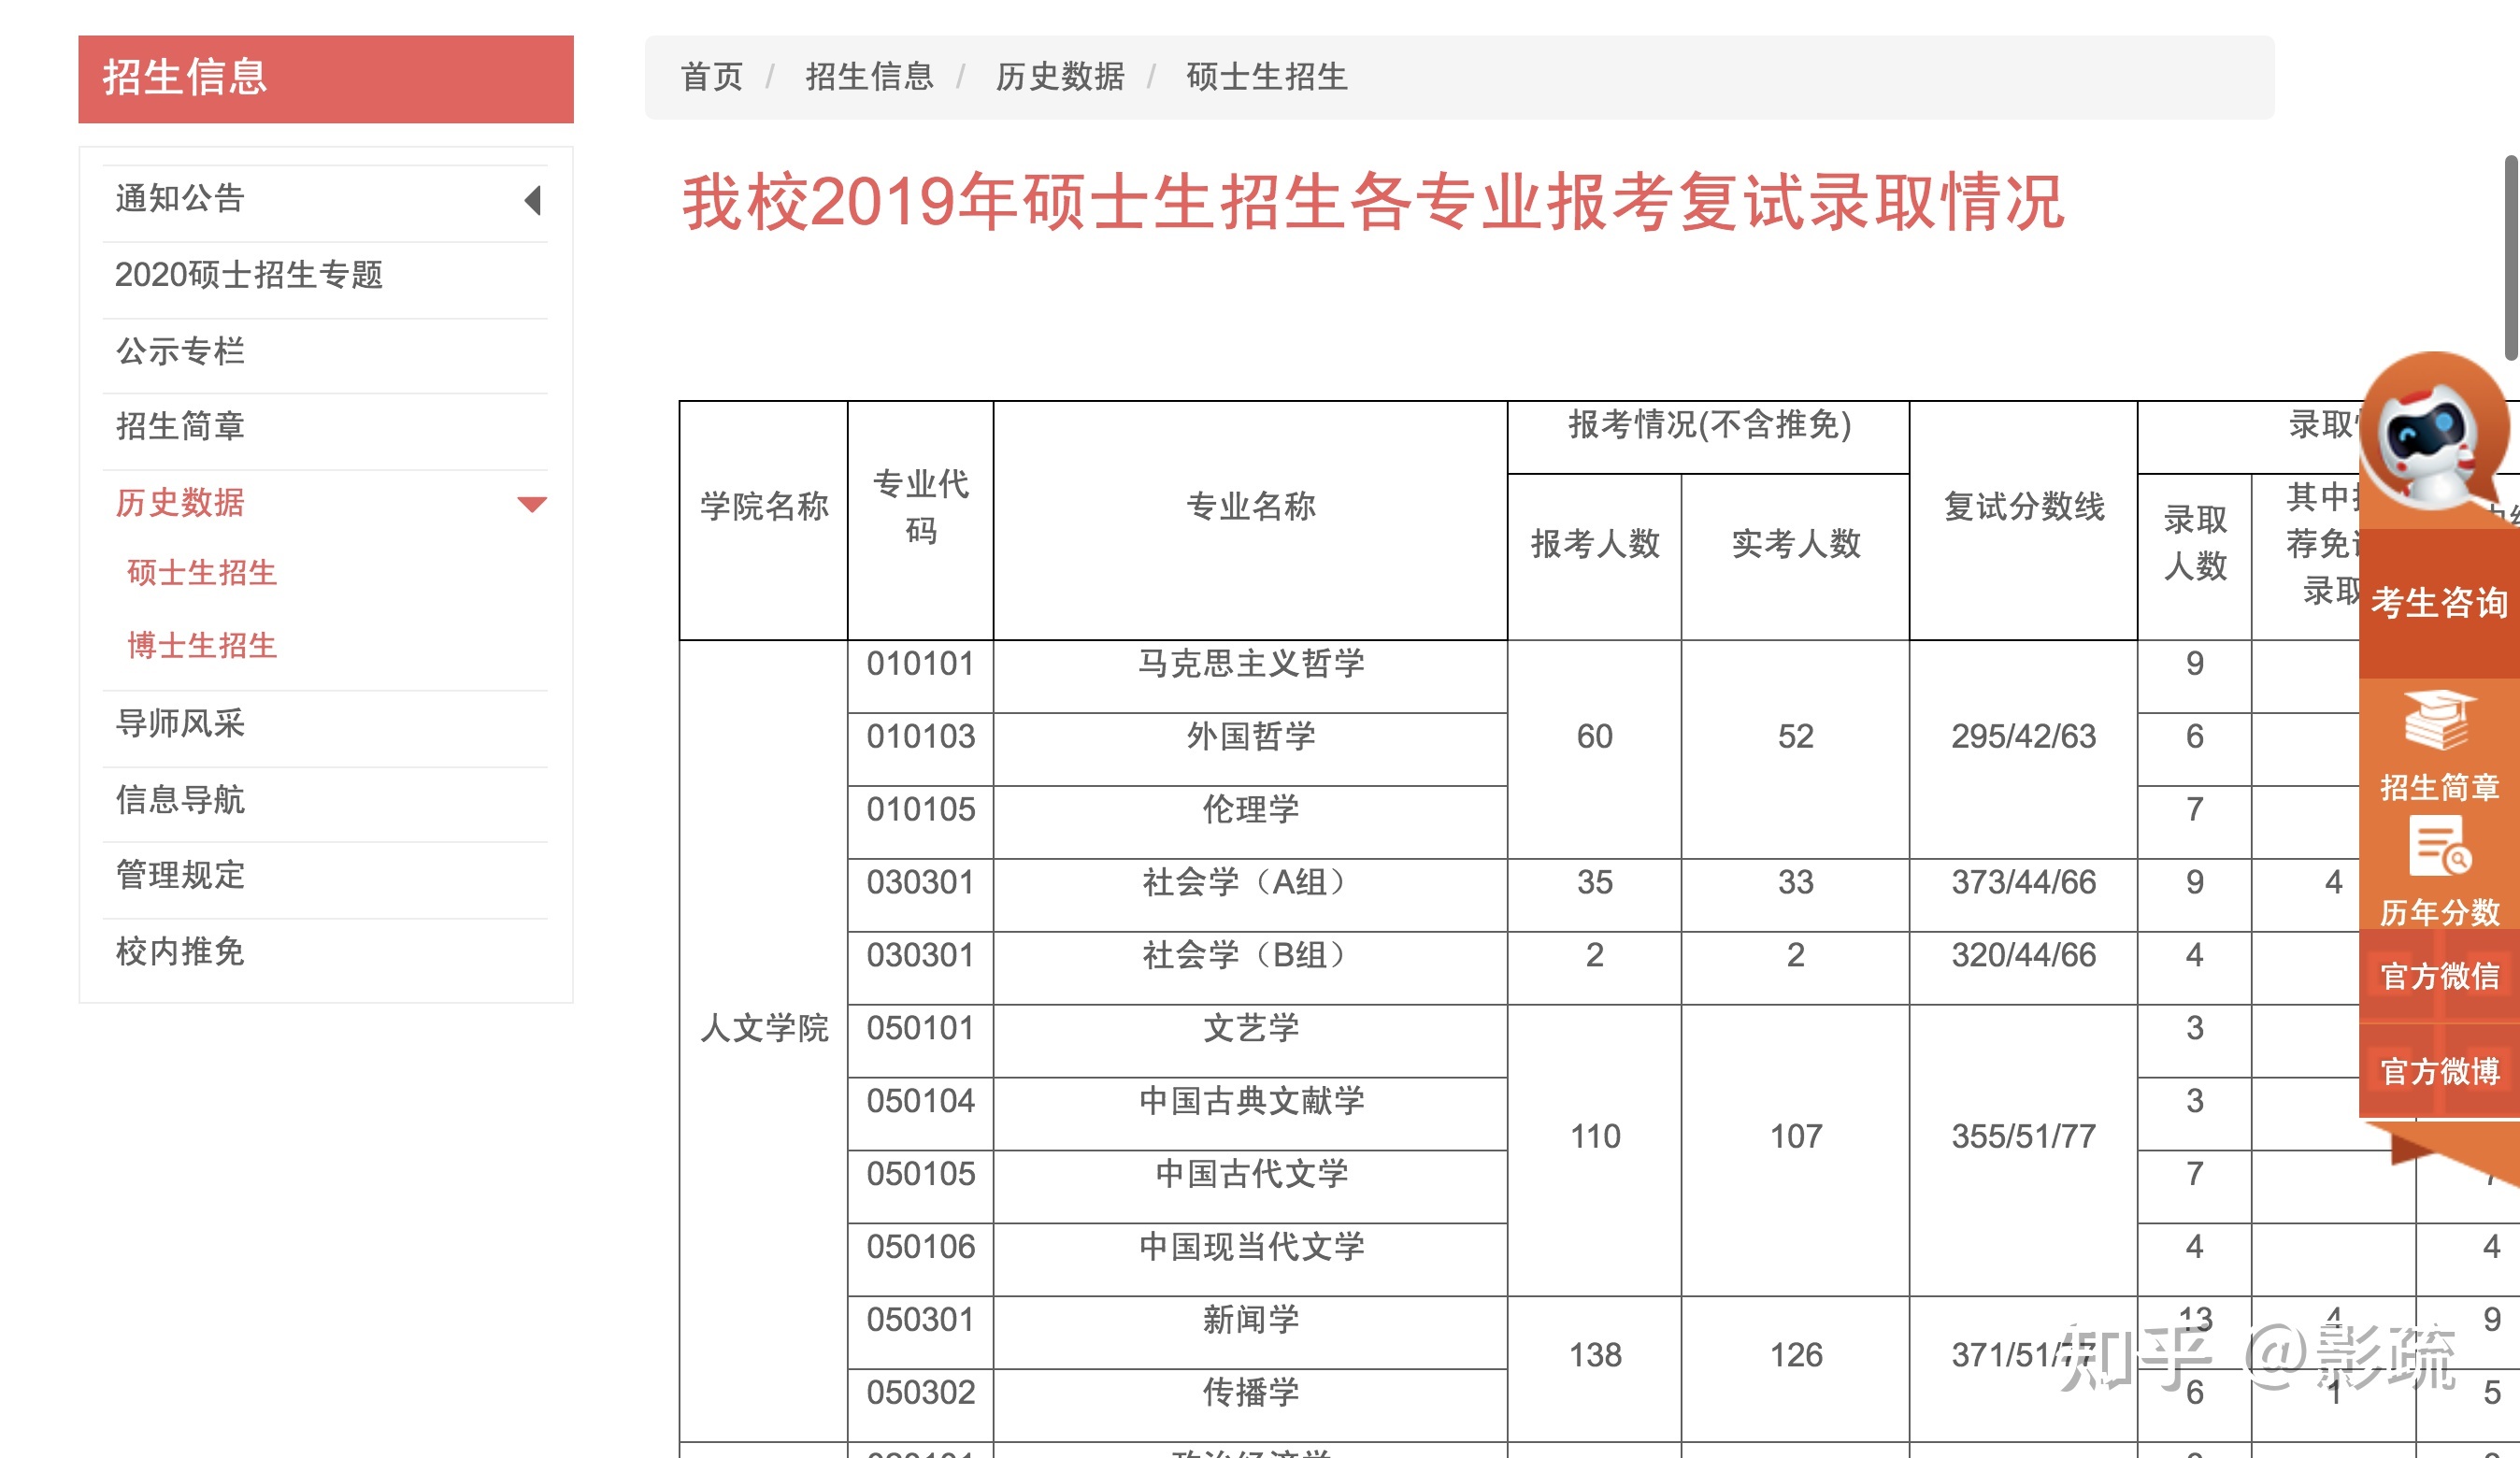 图 6. 上海财经大学历年报考数据